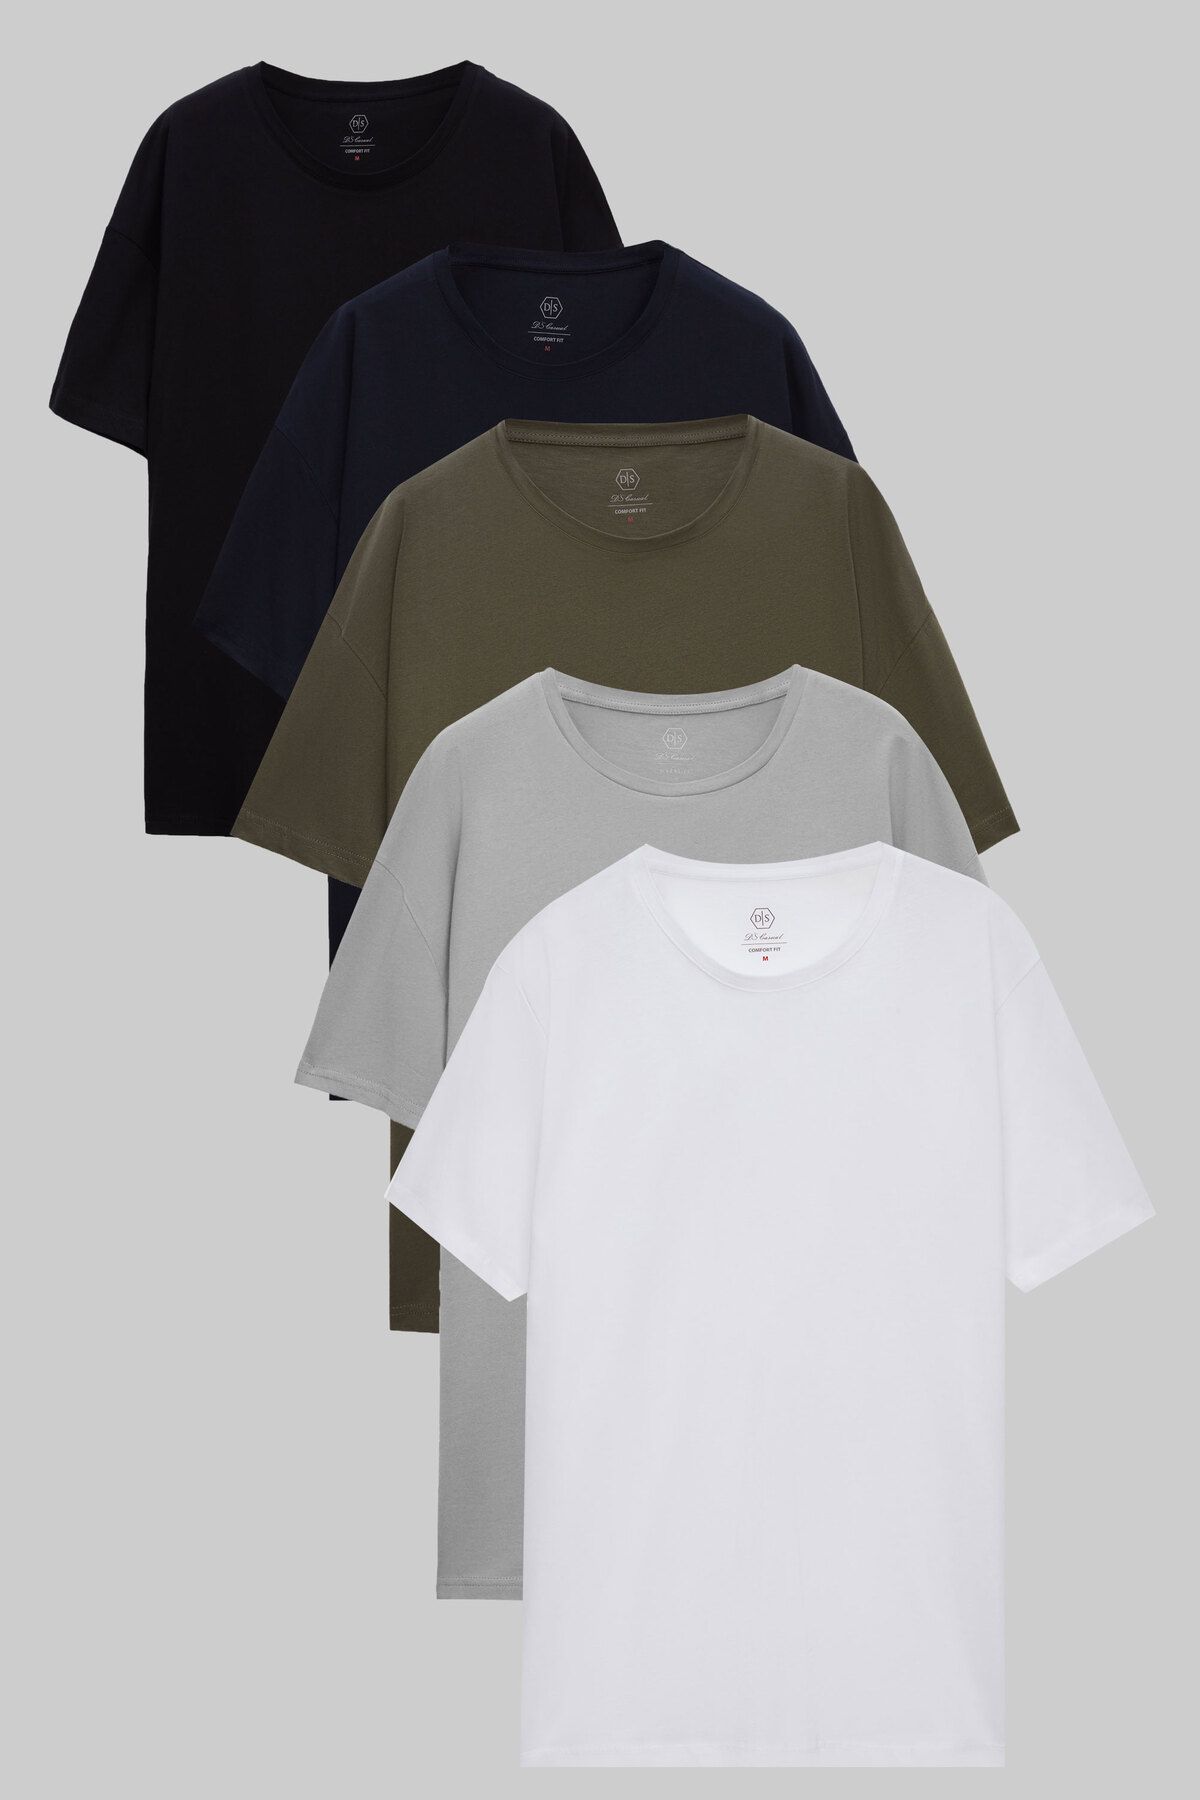 D'S Damat Ds Damat Comfort Siyah/Lacivert/Haki/Gri/Beyaz 5'Li Bol Kesim %100 Pamuk T-Shirt